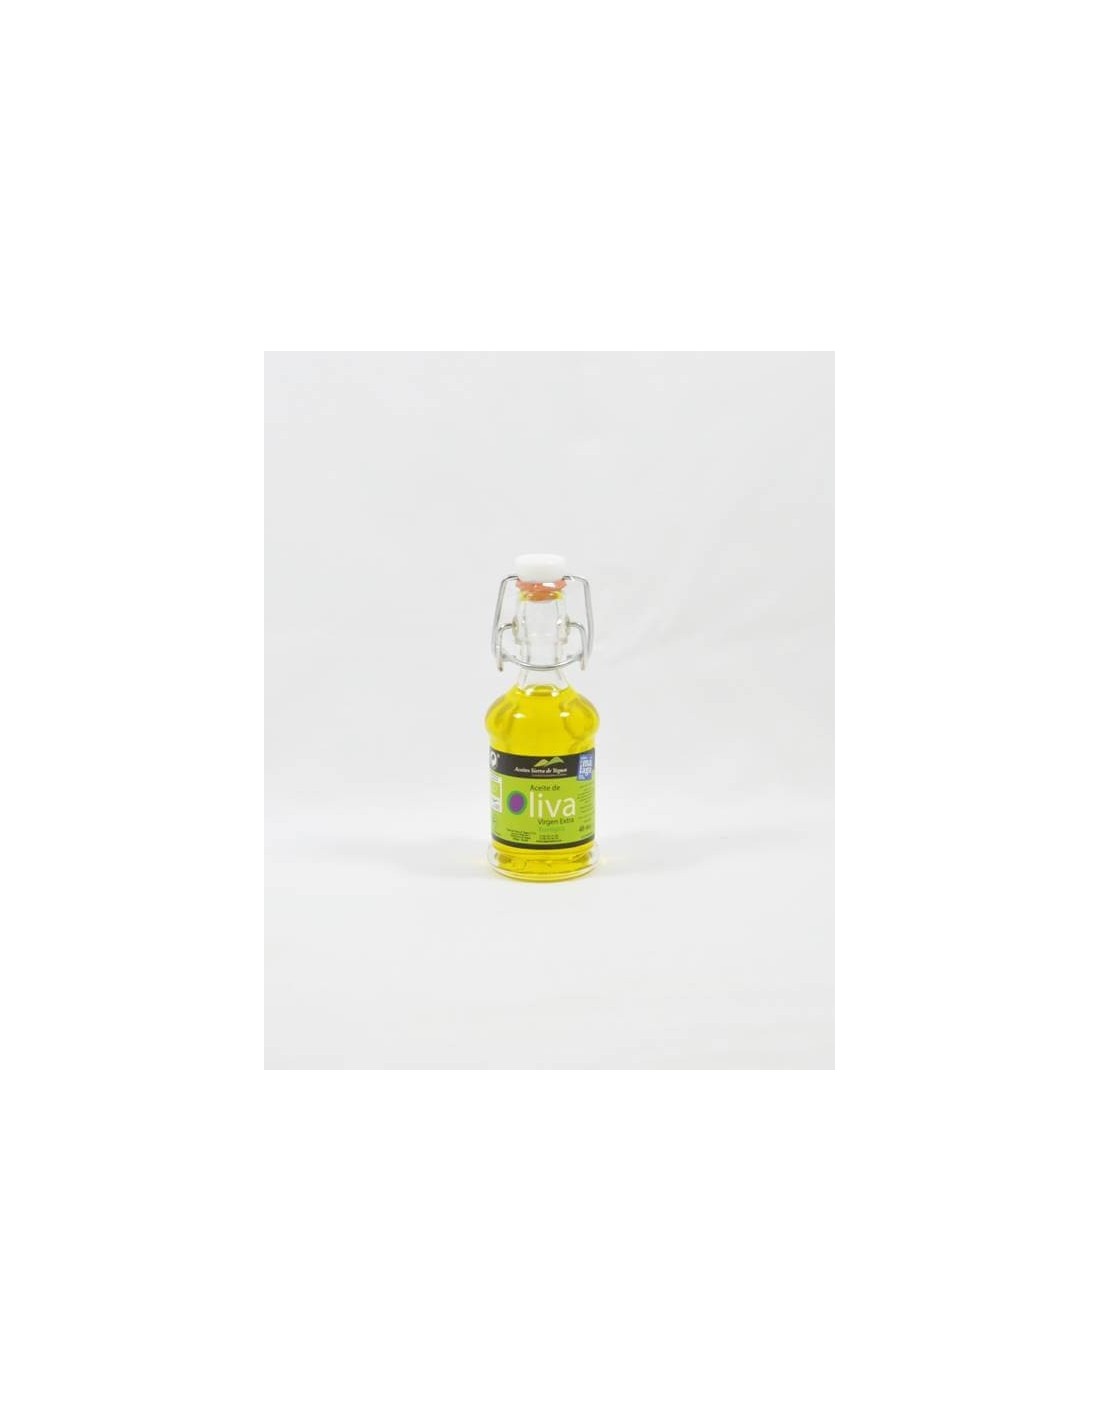 Mini bouteilles d'huile d'olive extra vierge BIO - Sierra de Yeguas.